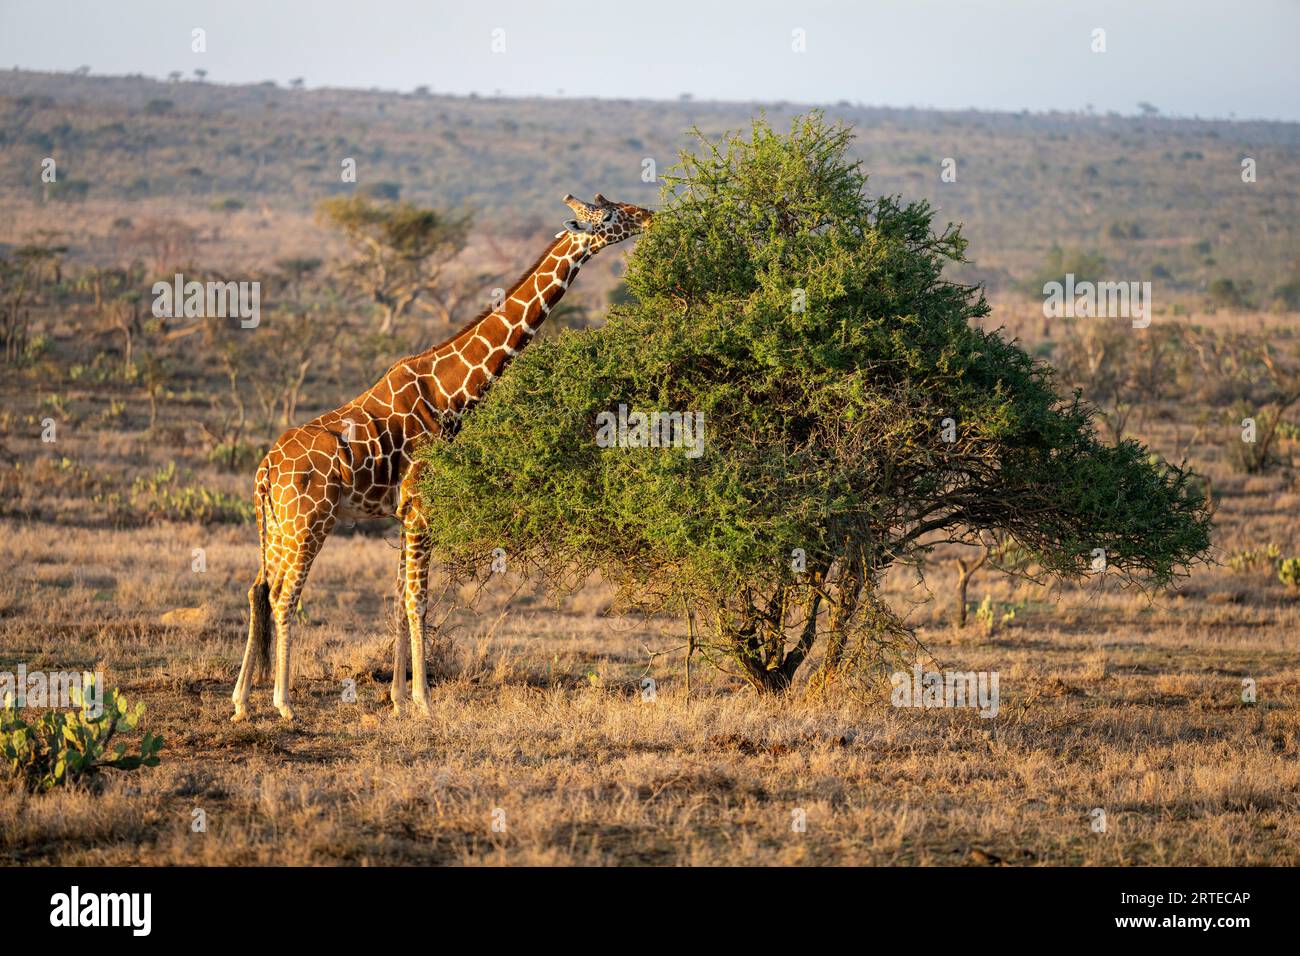 Girafe réticulée (Giraffa reticulata) se dresse sur la savane parcourant un acacia à la lumière du soleil doré ; Segera, Laikipia, Kenya Banque D'Images